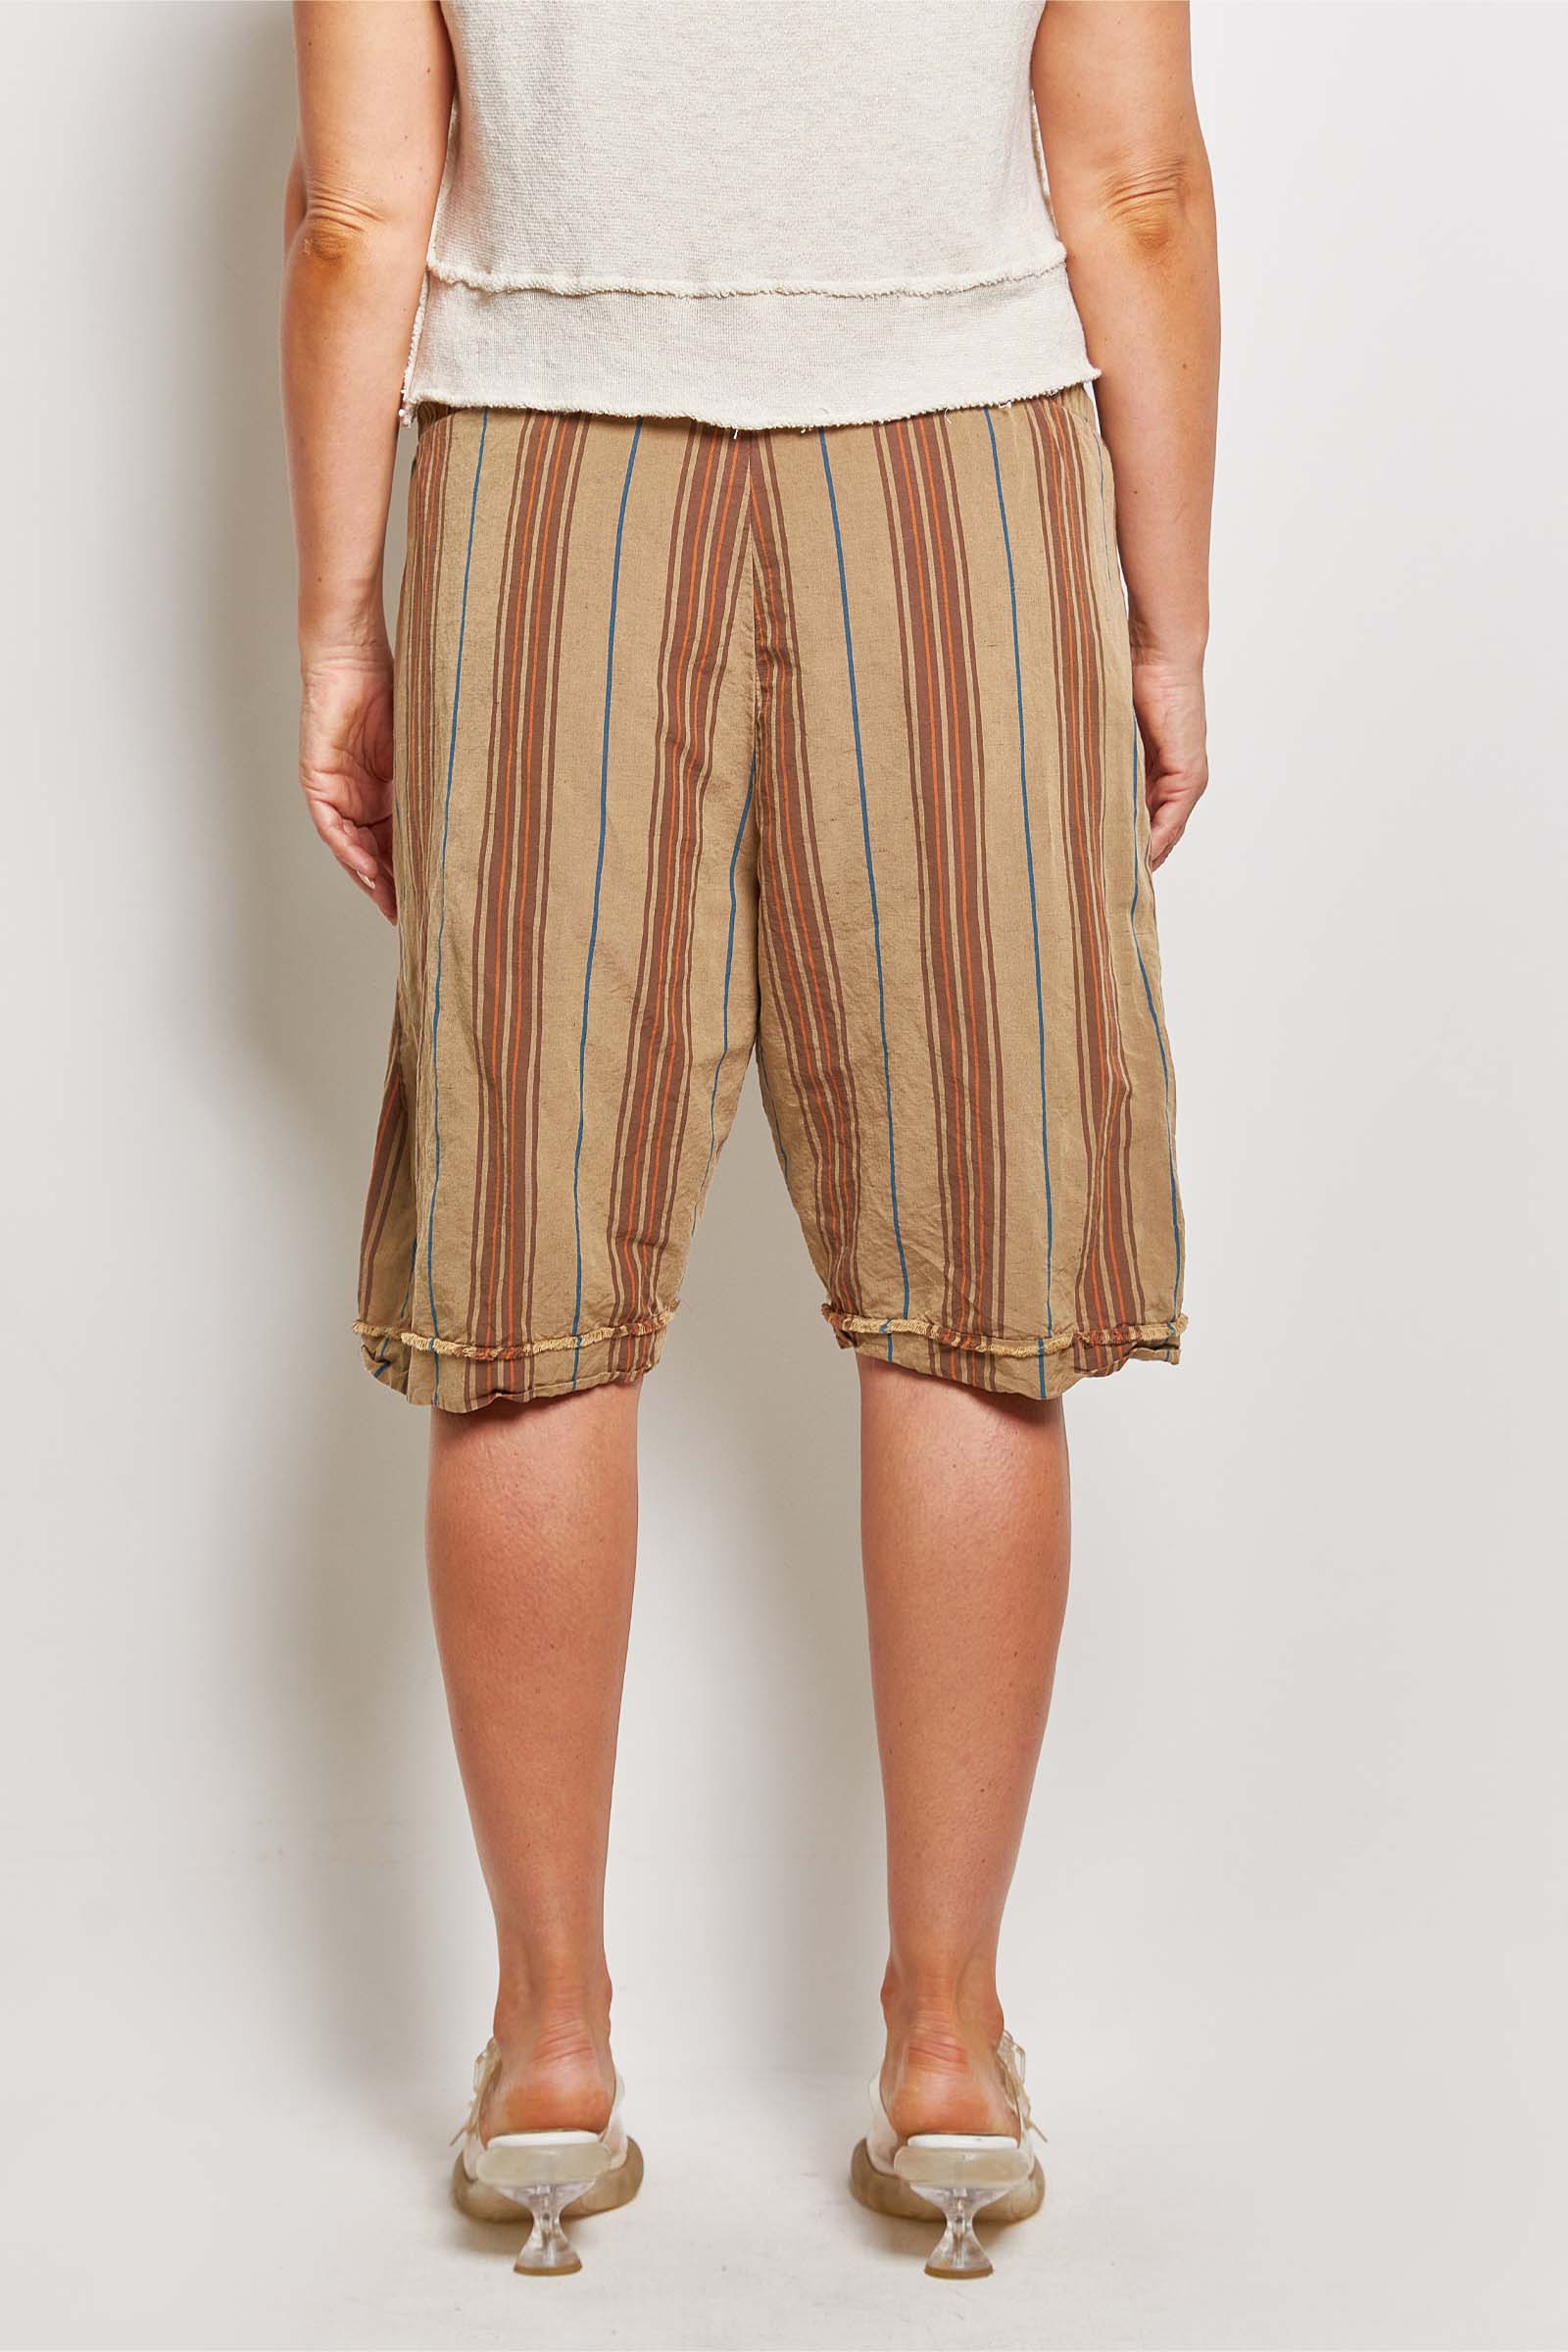 byfreer kooler khaki stripe linen shorts.